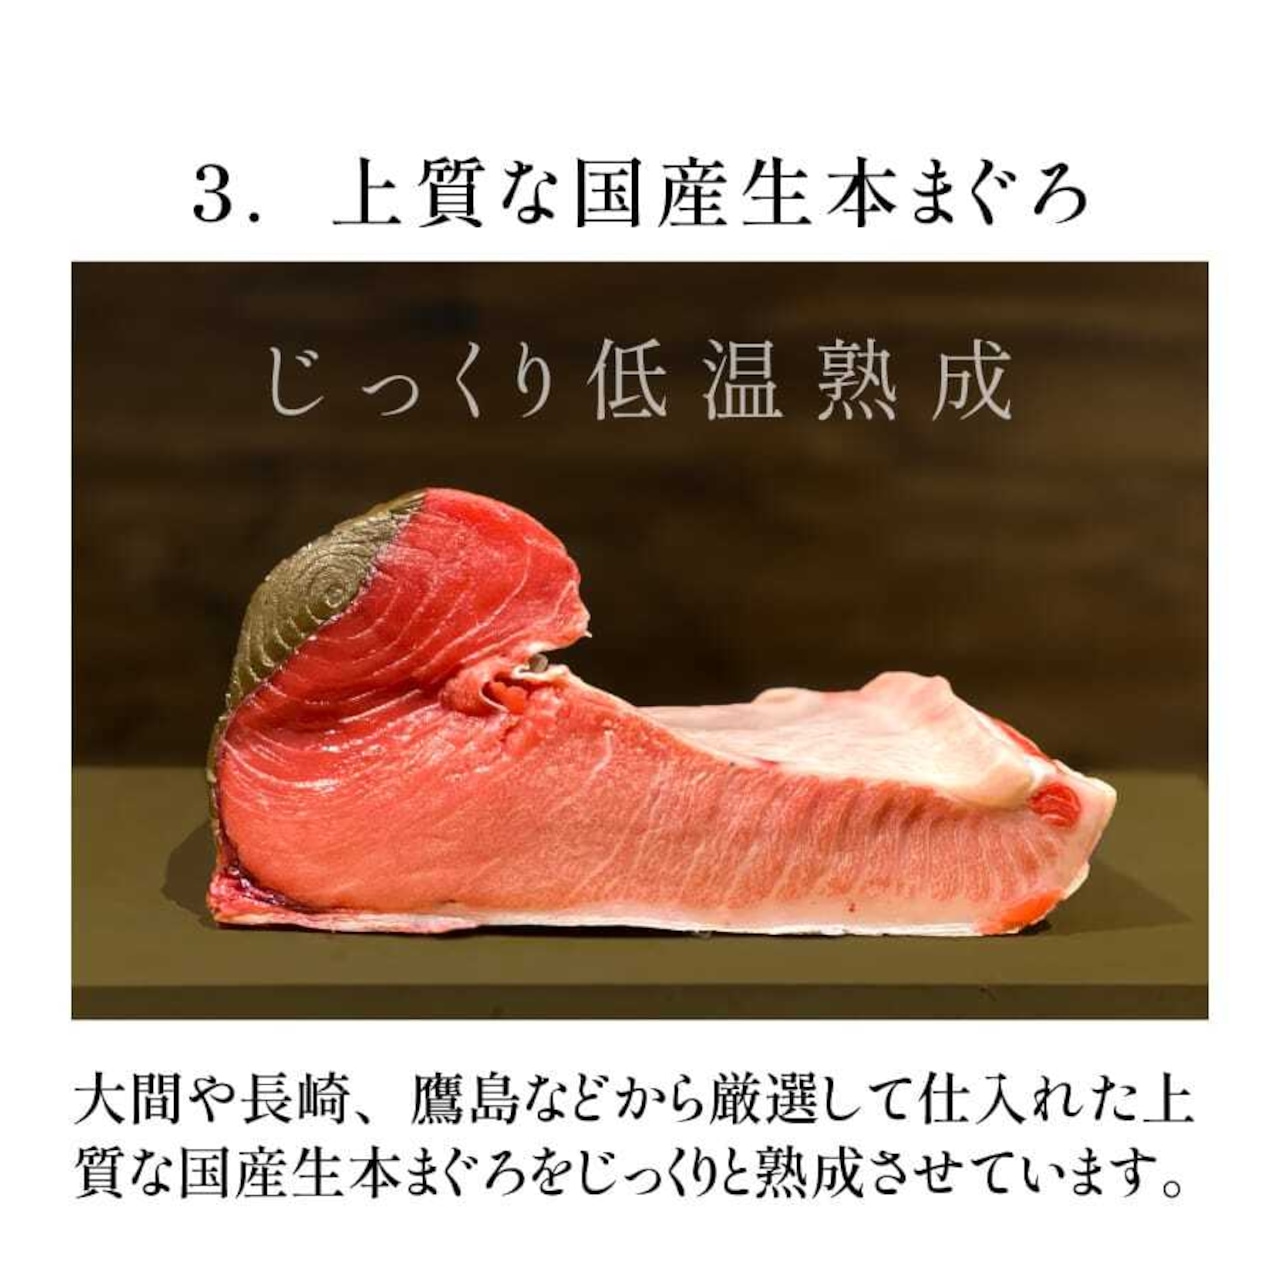 コトブキ海鮮丼 プラチナまぐろ赤身 単品